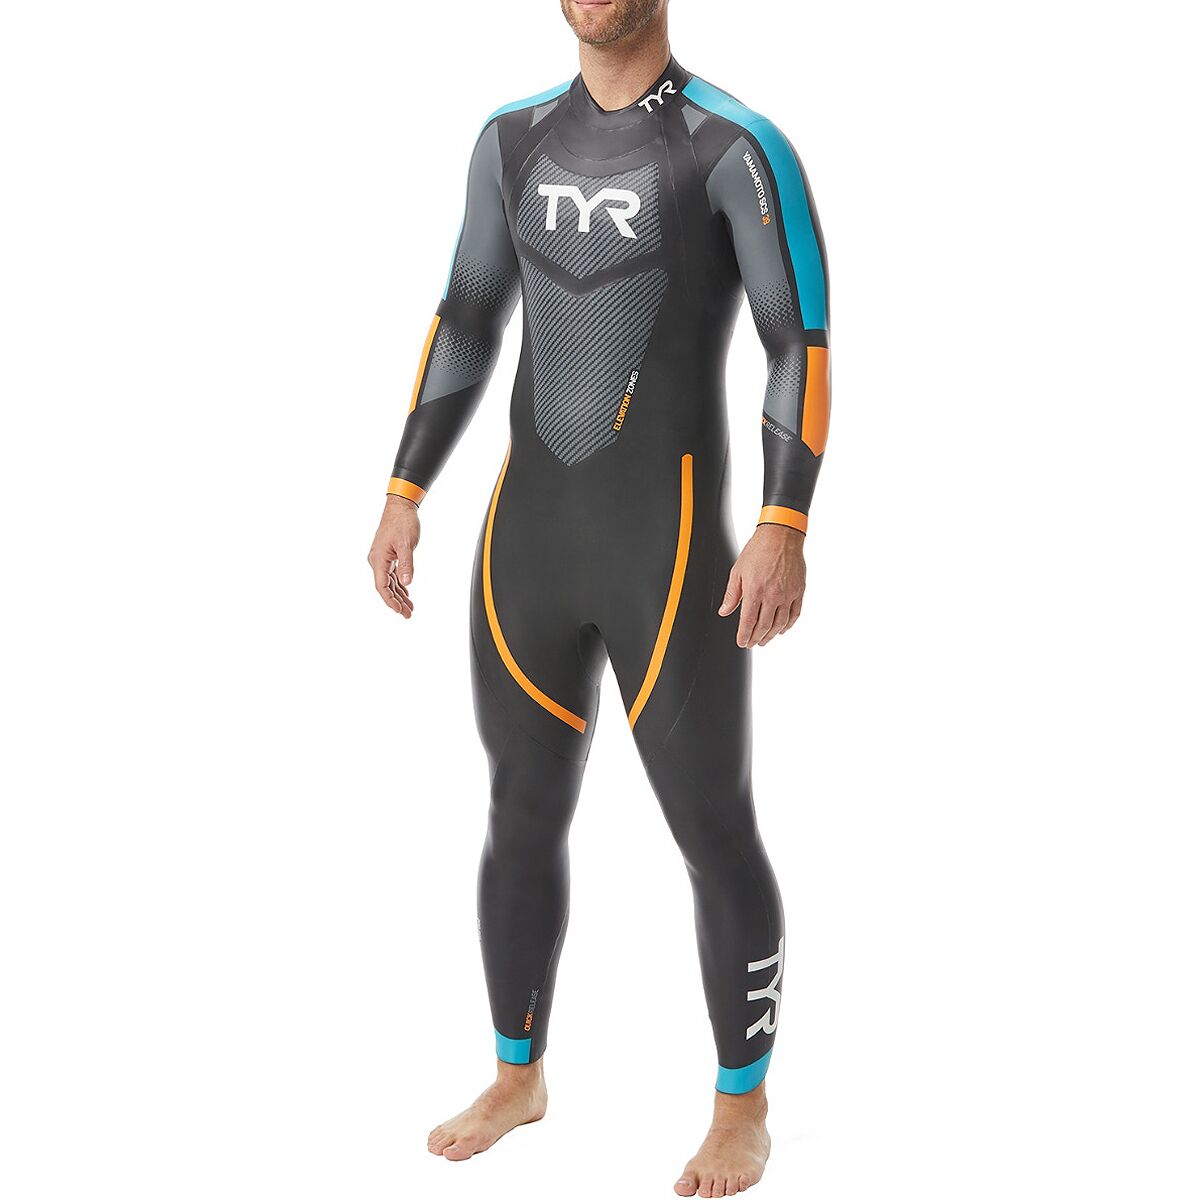 TYR Cat 2 Wetsuit - Men's Black/Blue/Orange, XL